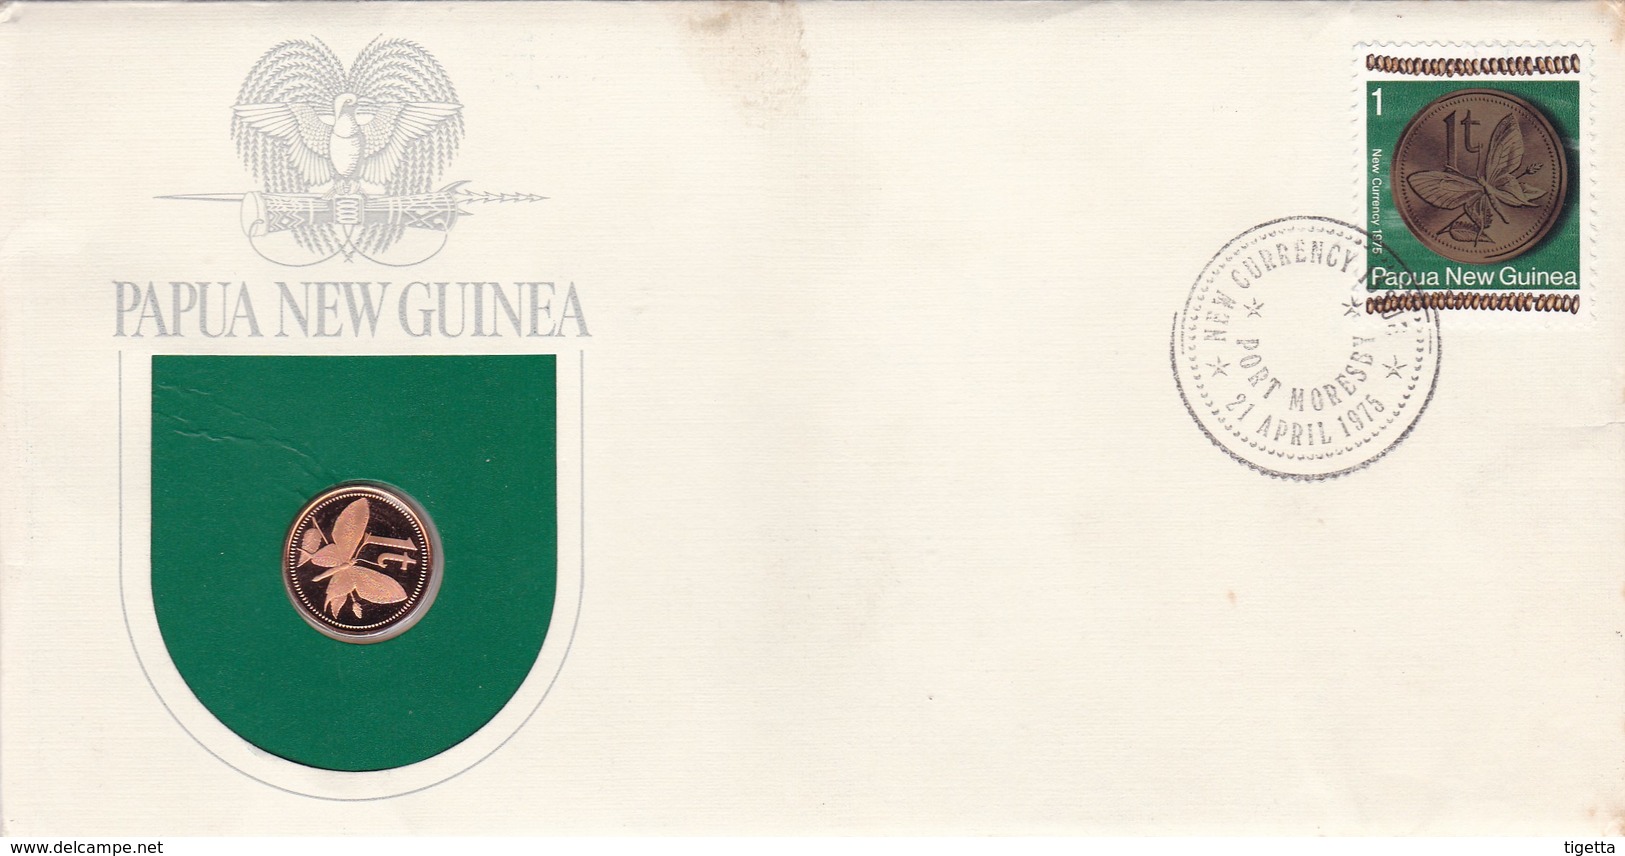 PAPUA NEW GUINEA SERIE MONETE CON ANNULLO PAPUA NUOVA GUINEA ANNO 1975 - Papuasia Nuova Guinea